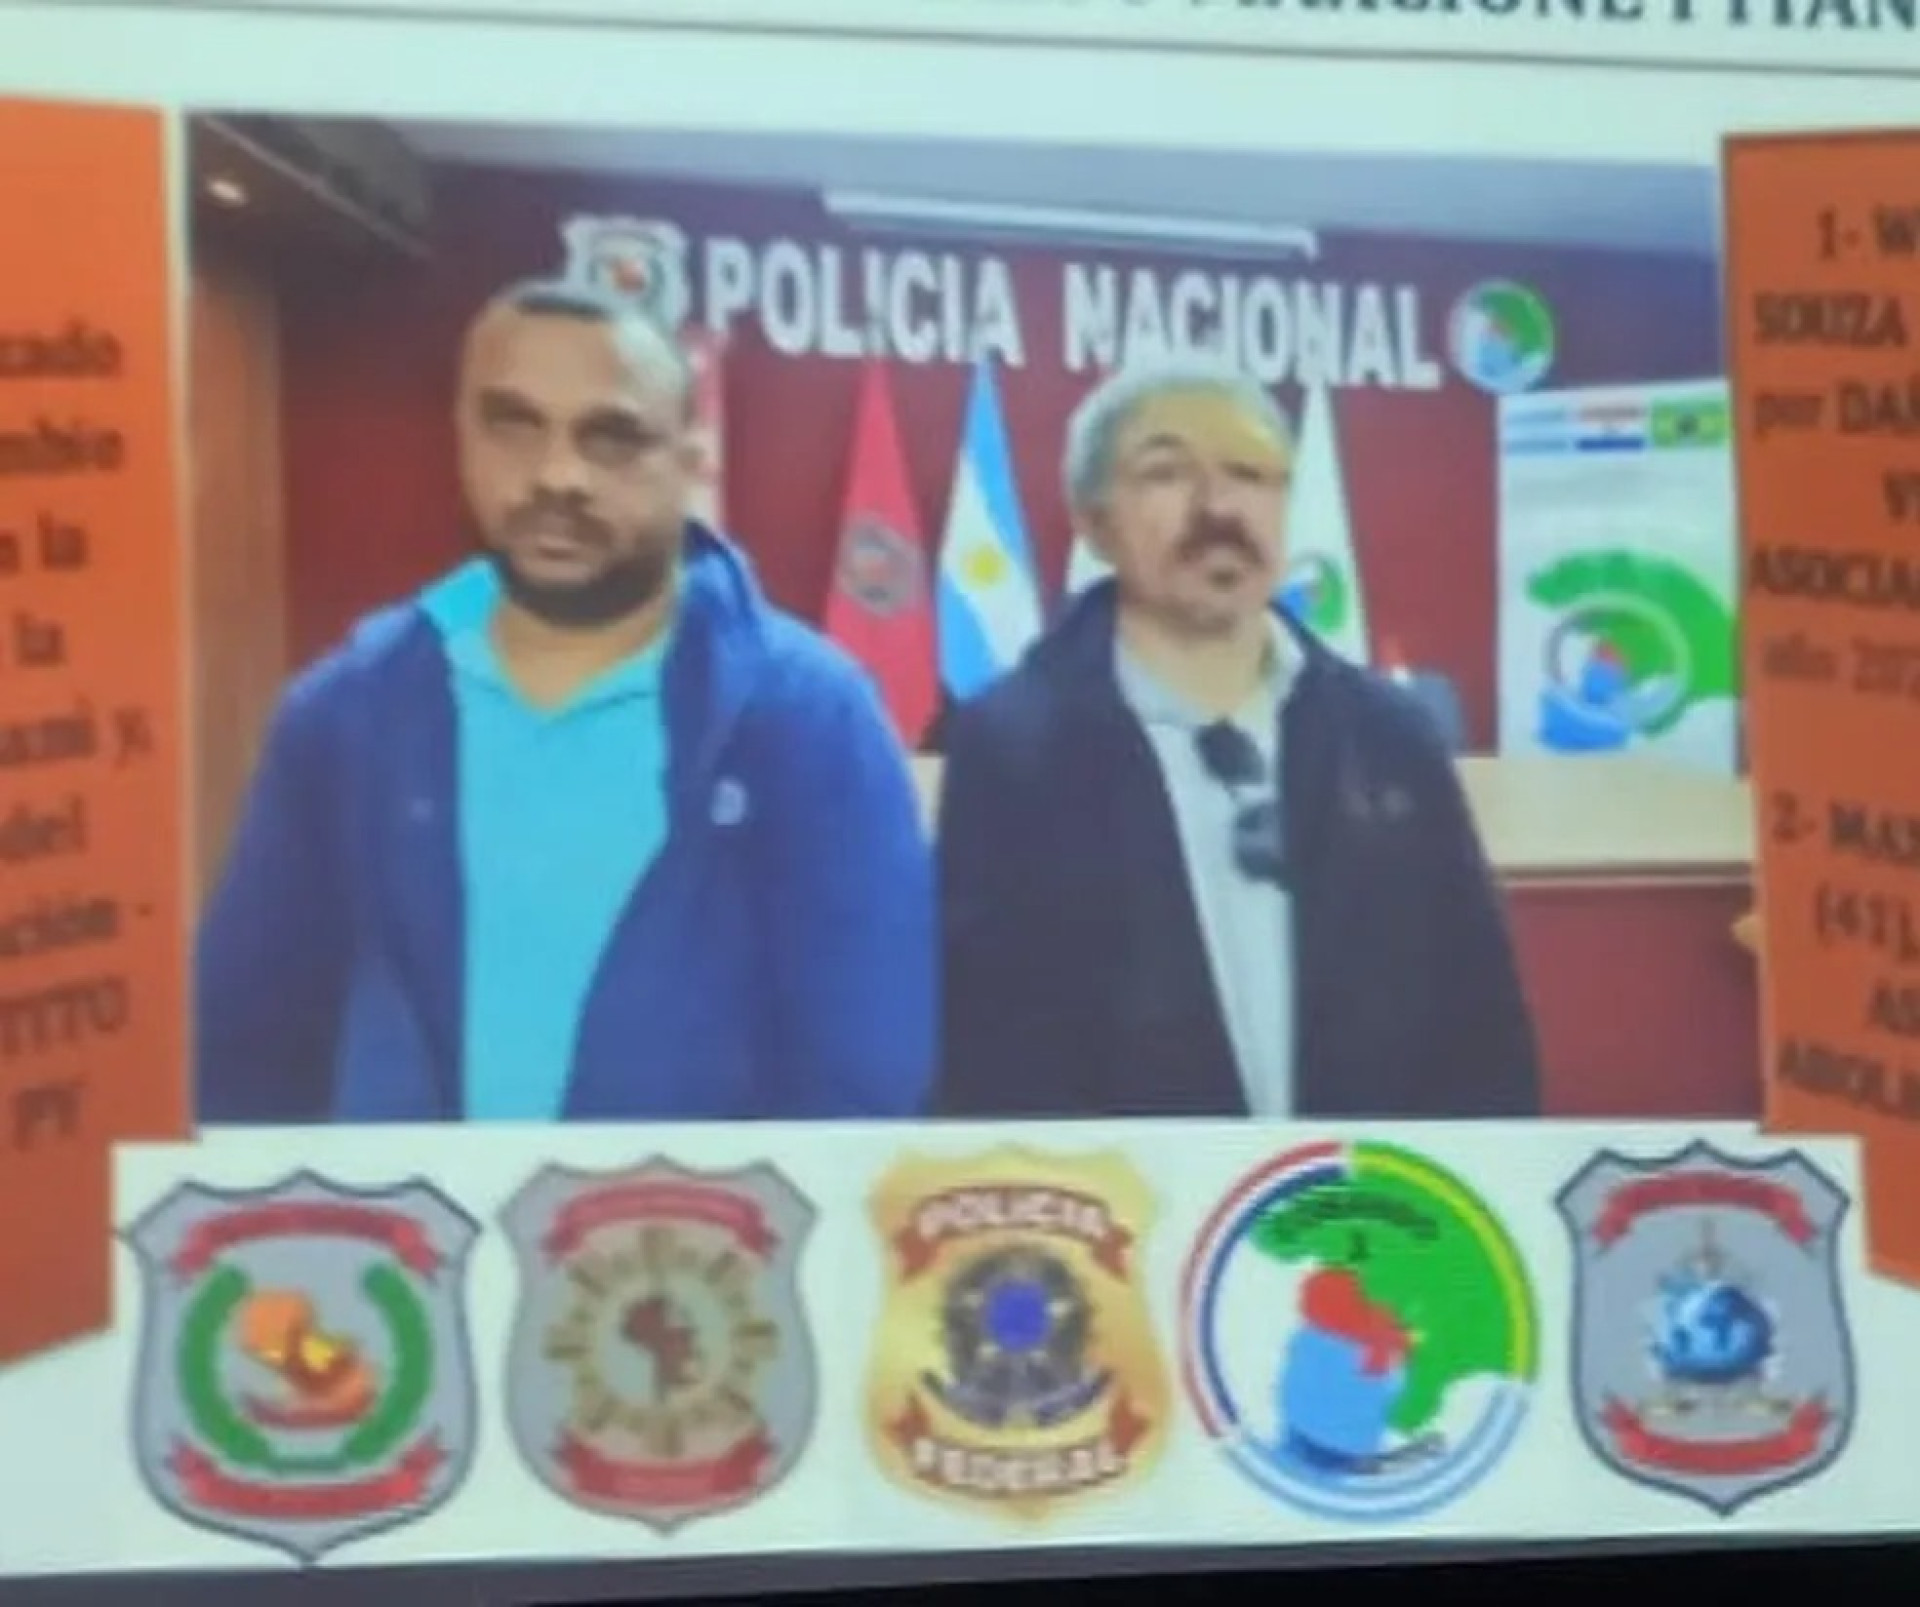 Radialista e blogueiro cearense foram presos no Paraguai nesta quinta, 15